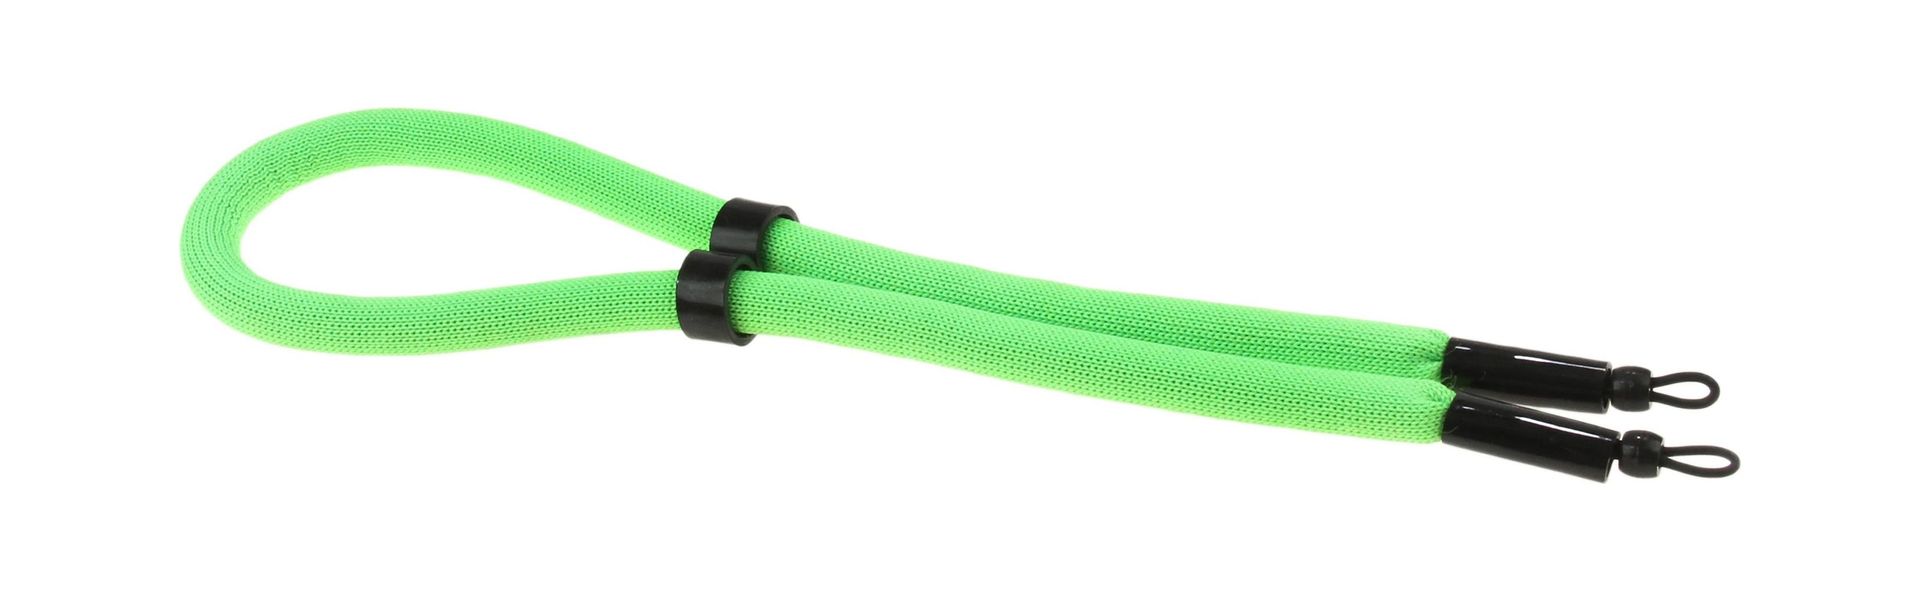 Ремешок плавающий для солнцезащитных очков, зеленый A2281